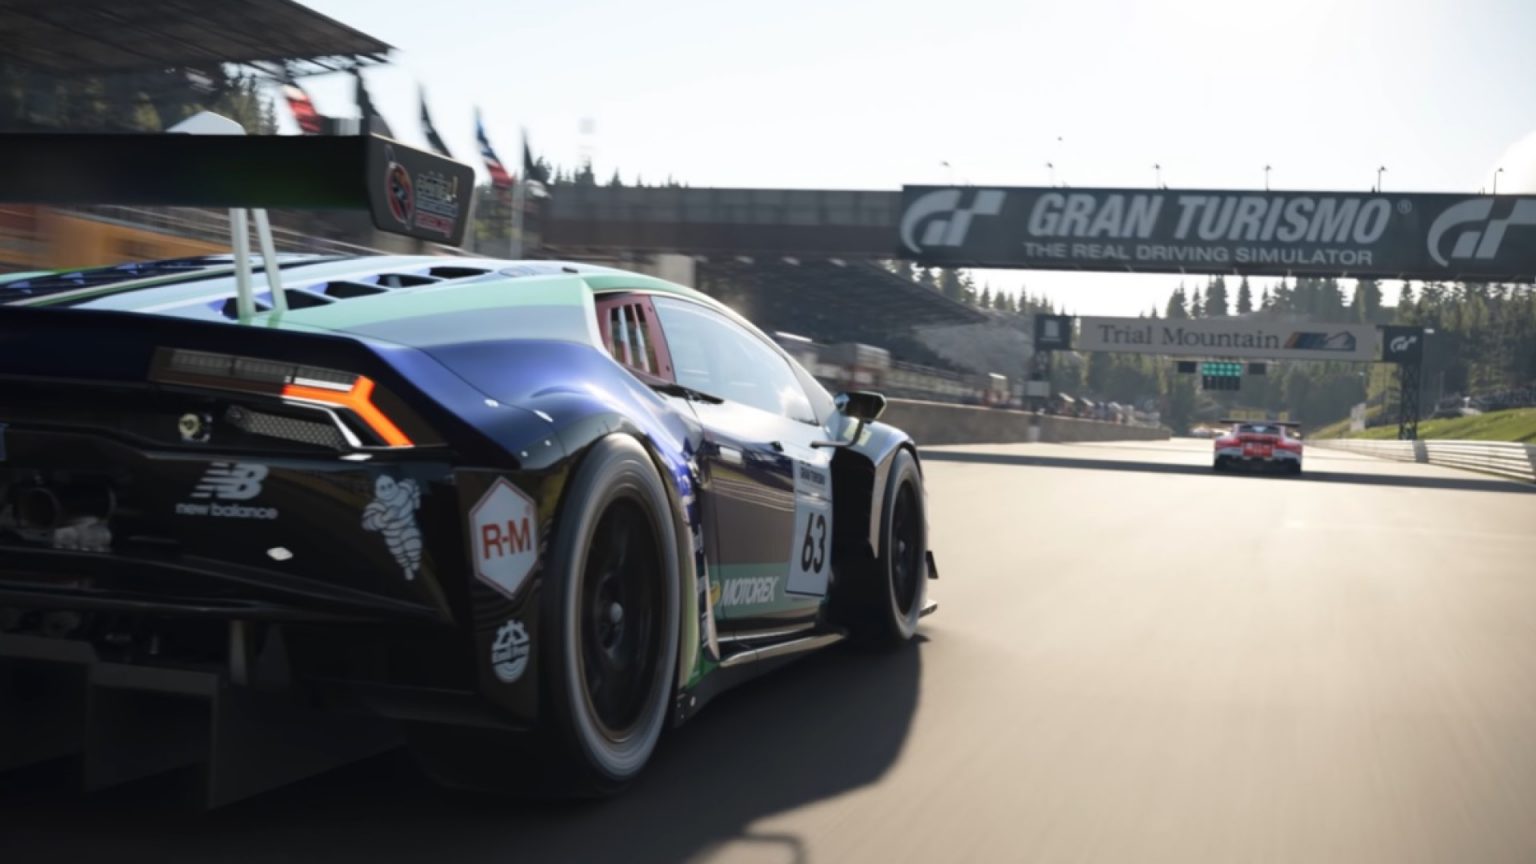 I början av augusti kommer Gran Turismo 7 att få fyra nya bilar, - säger producenten av serien